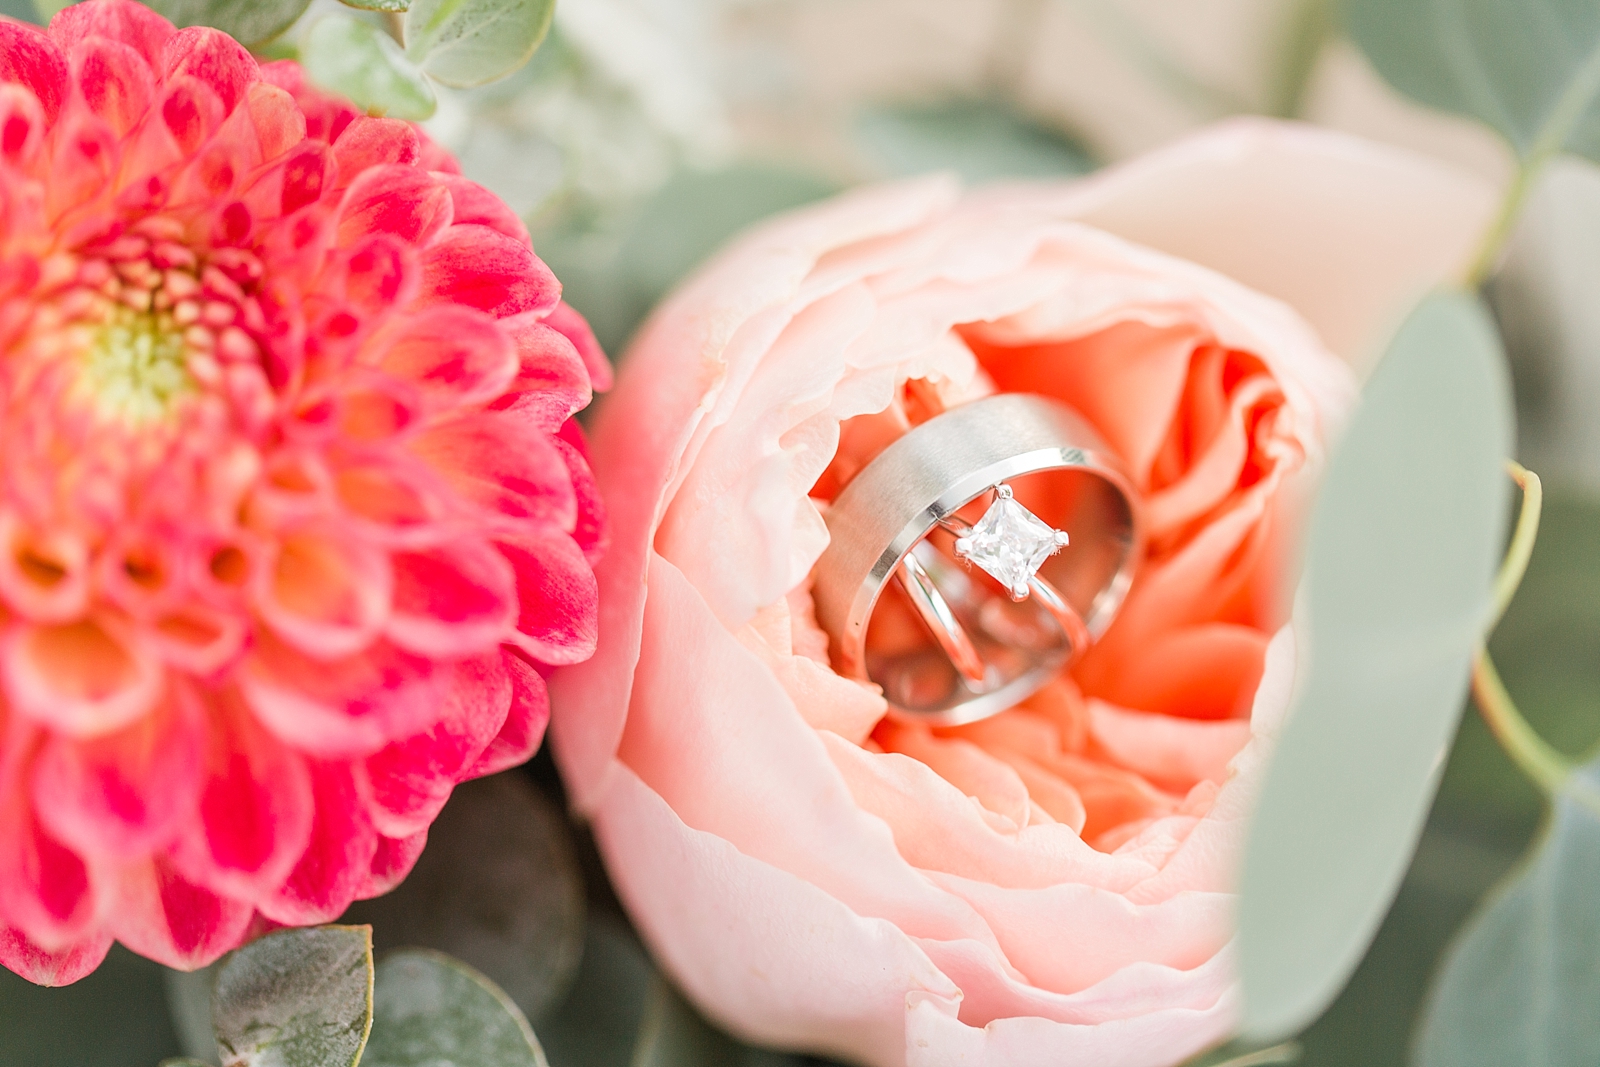 Chestnut Ridge Wedding rings in flower detail Photo